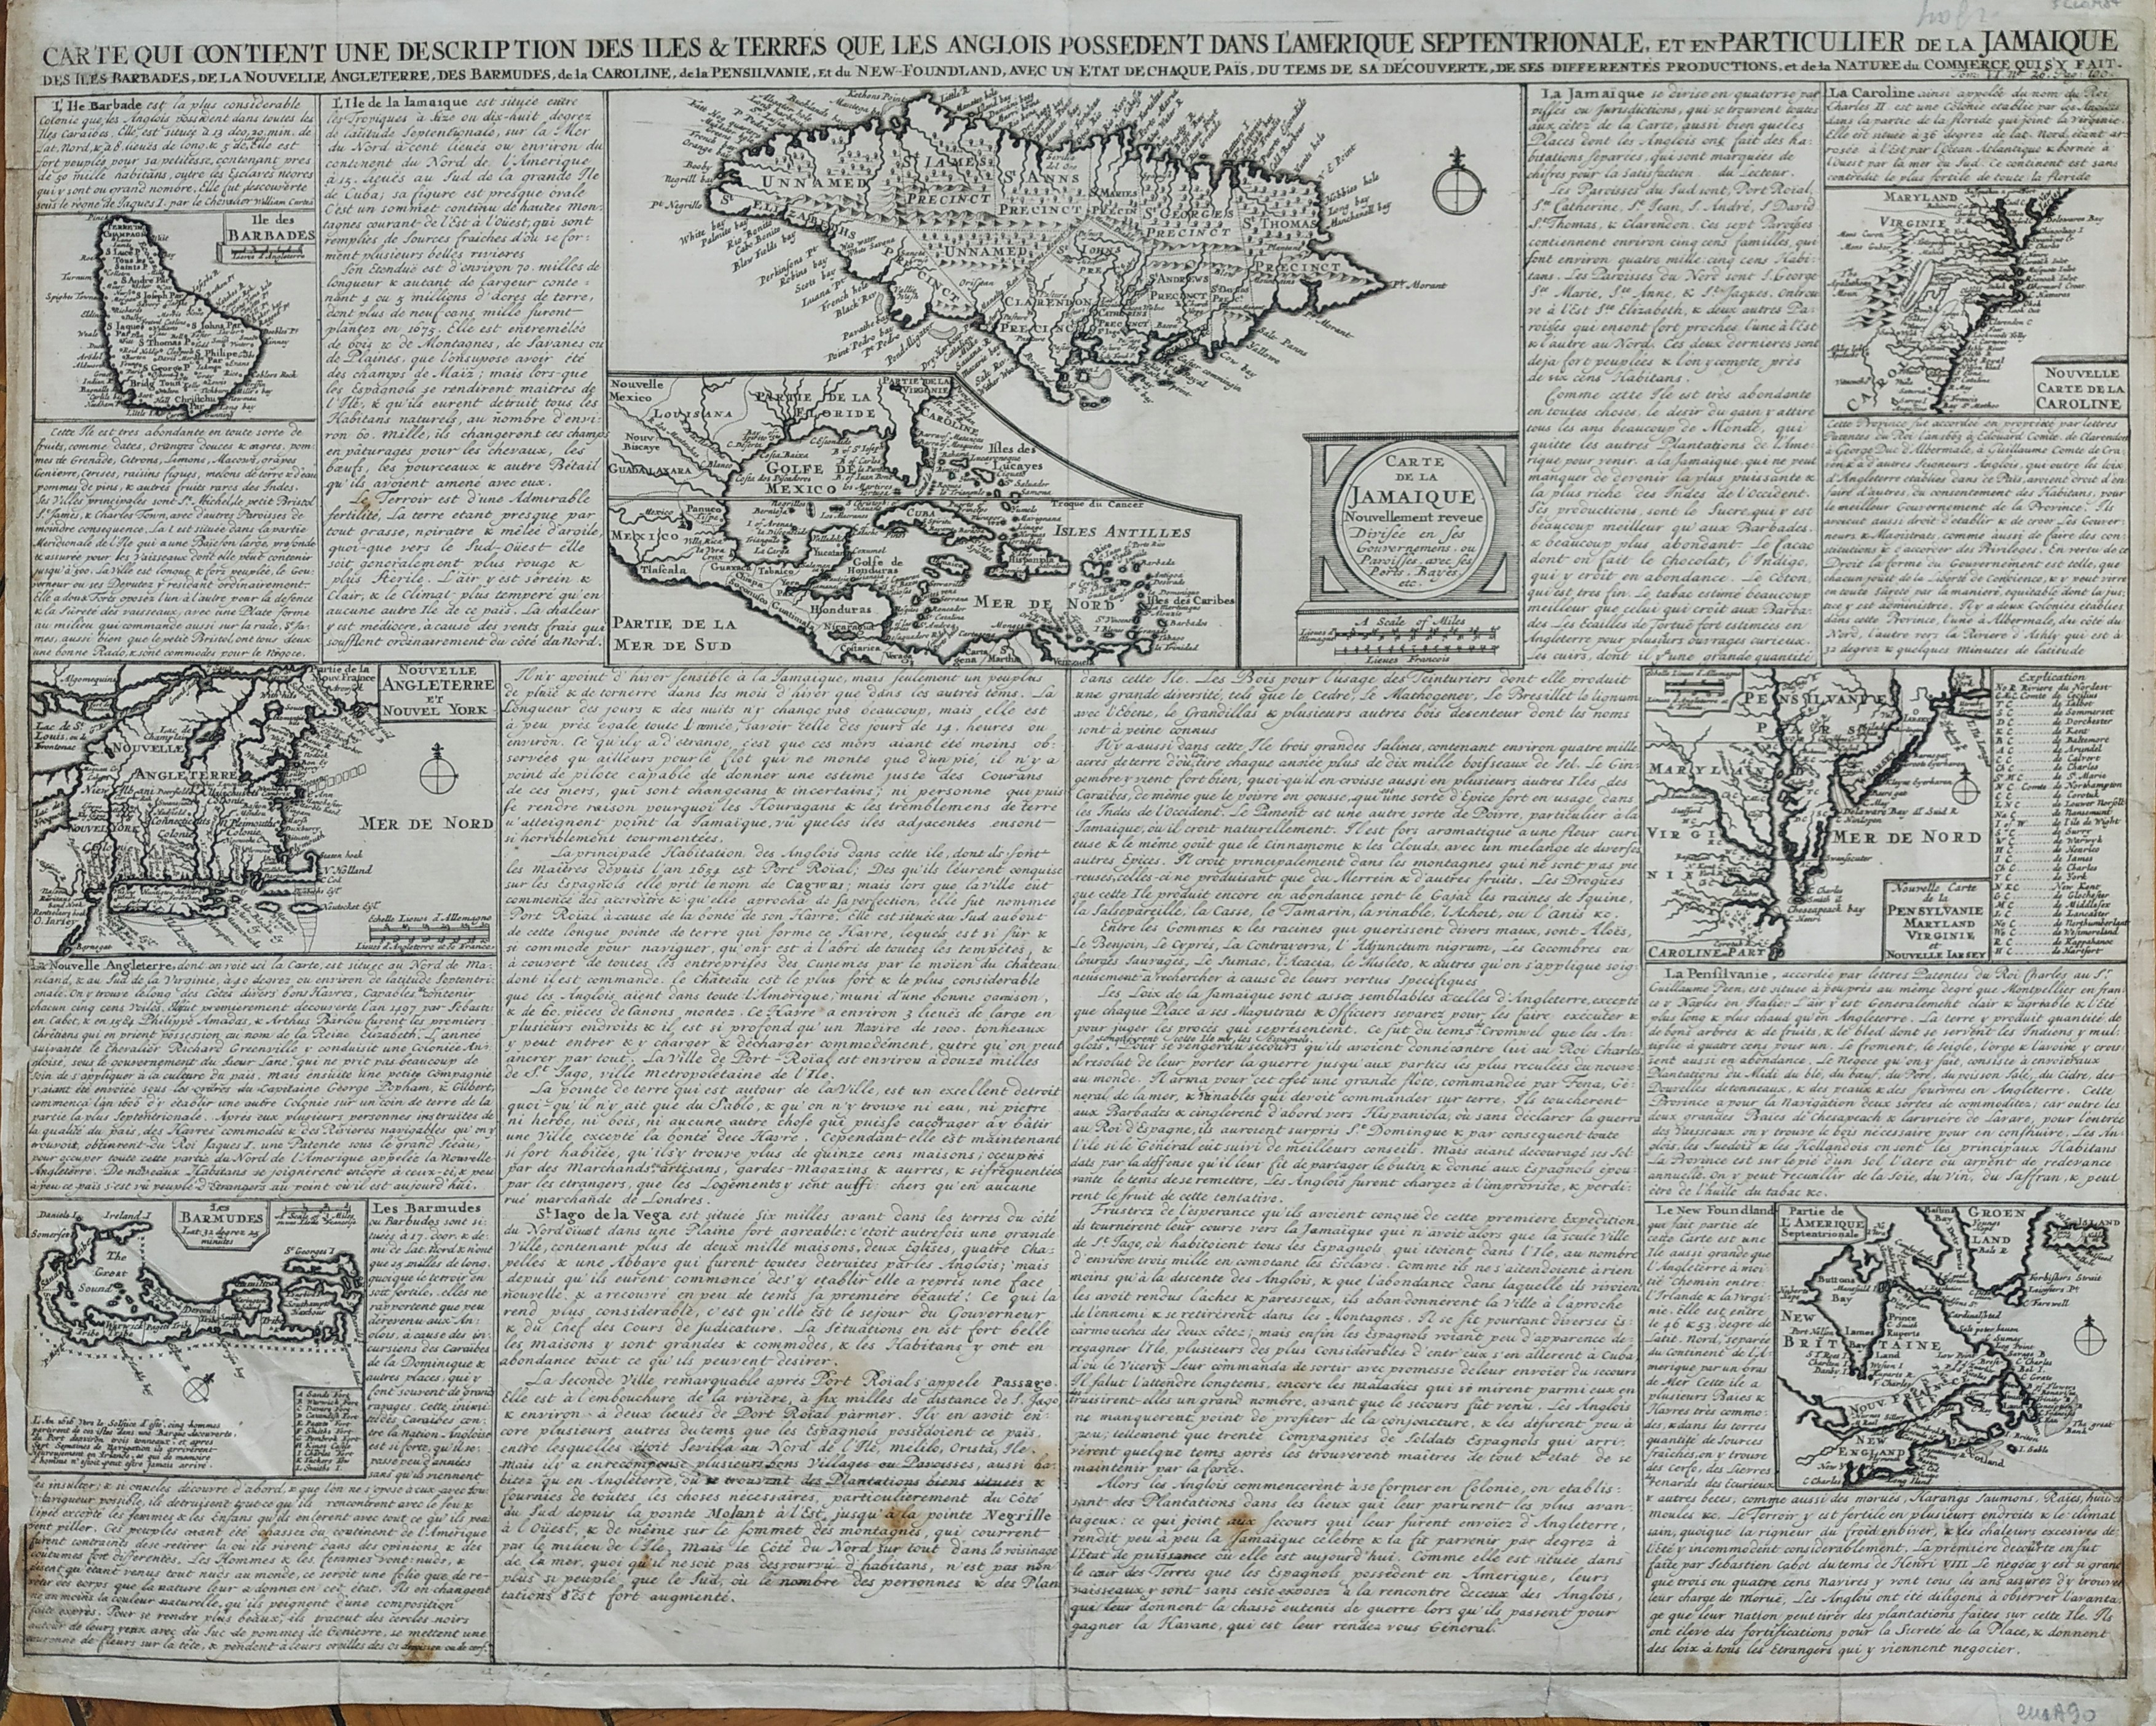 Carte qui contient une description des iles & terres que les Anglois possedent dans l